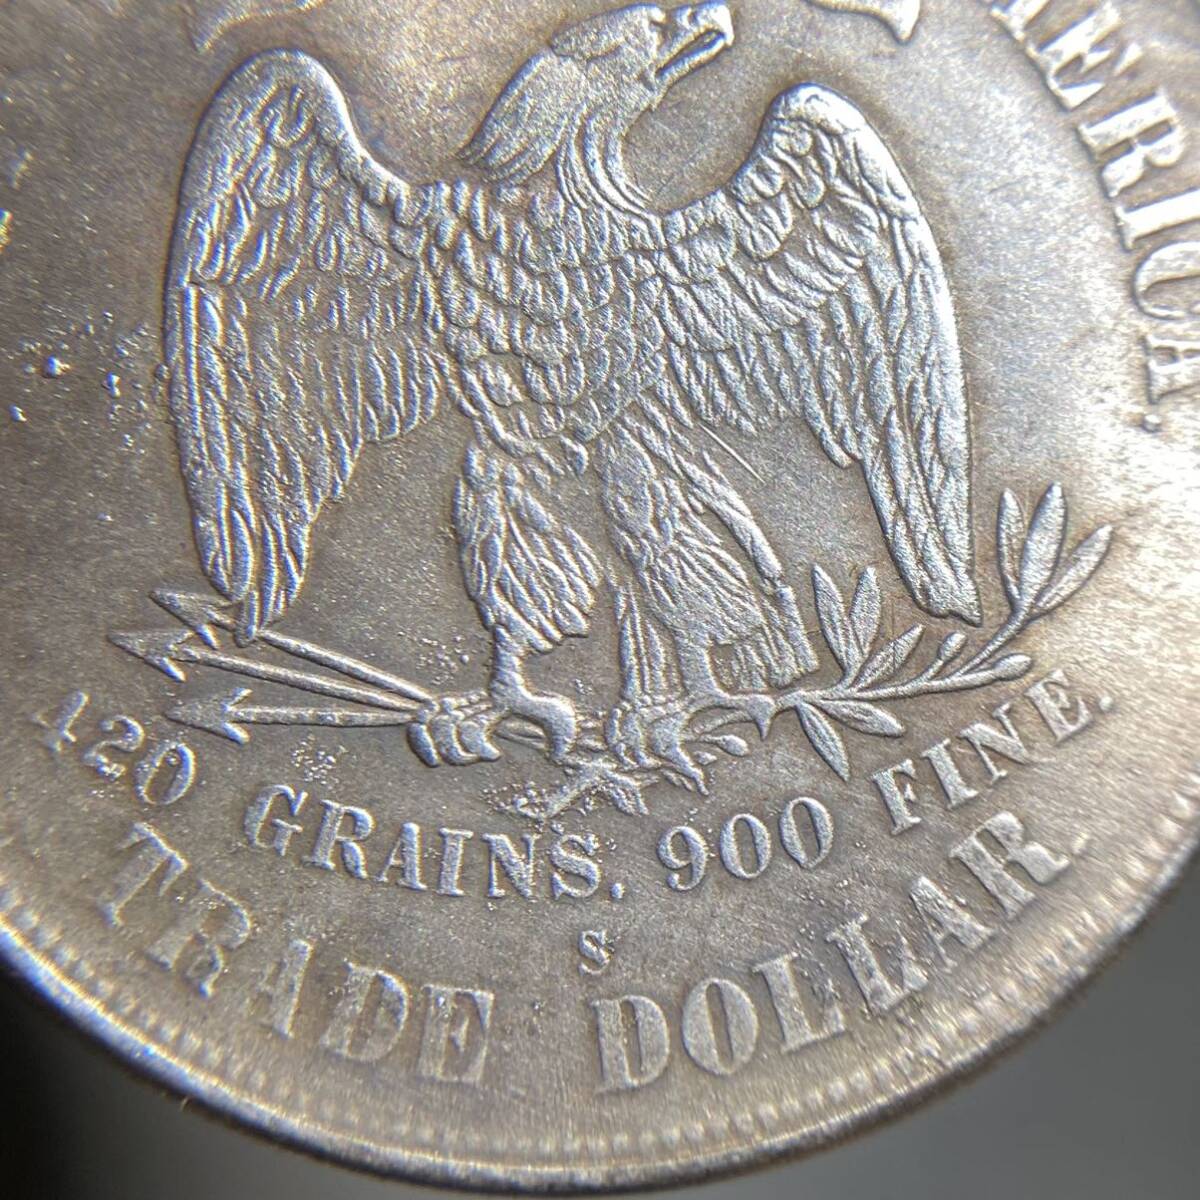 アメリカ古銭 貿易ドル 約21.88g 1879s 13つ星 リバティ 一円貨幣 硬貨骨董品コインコレクションの画像5